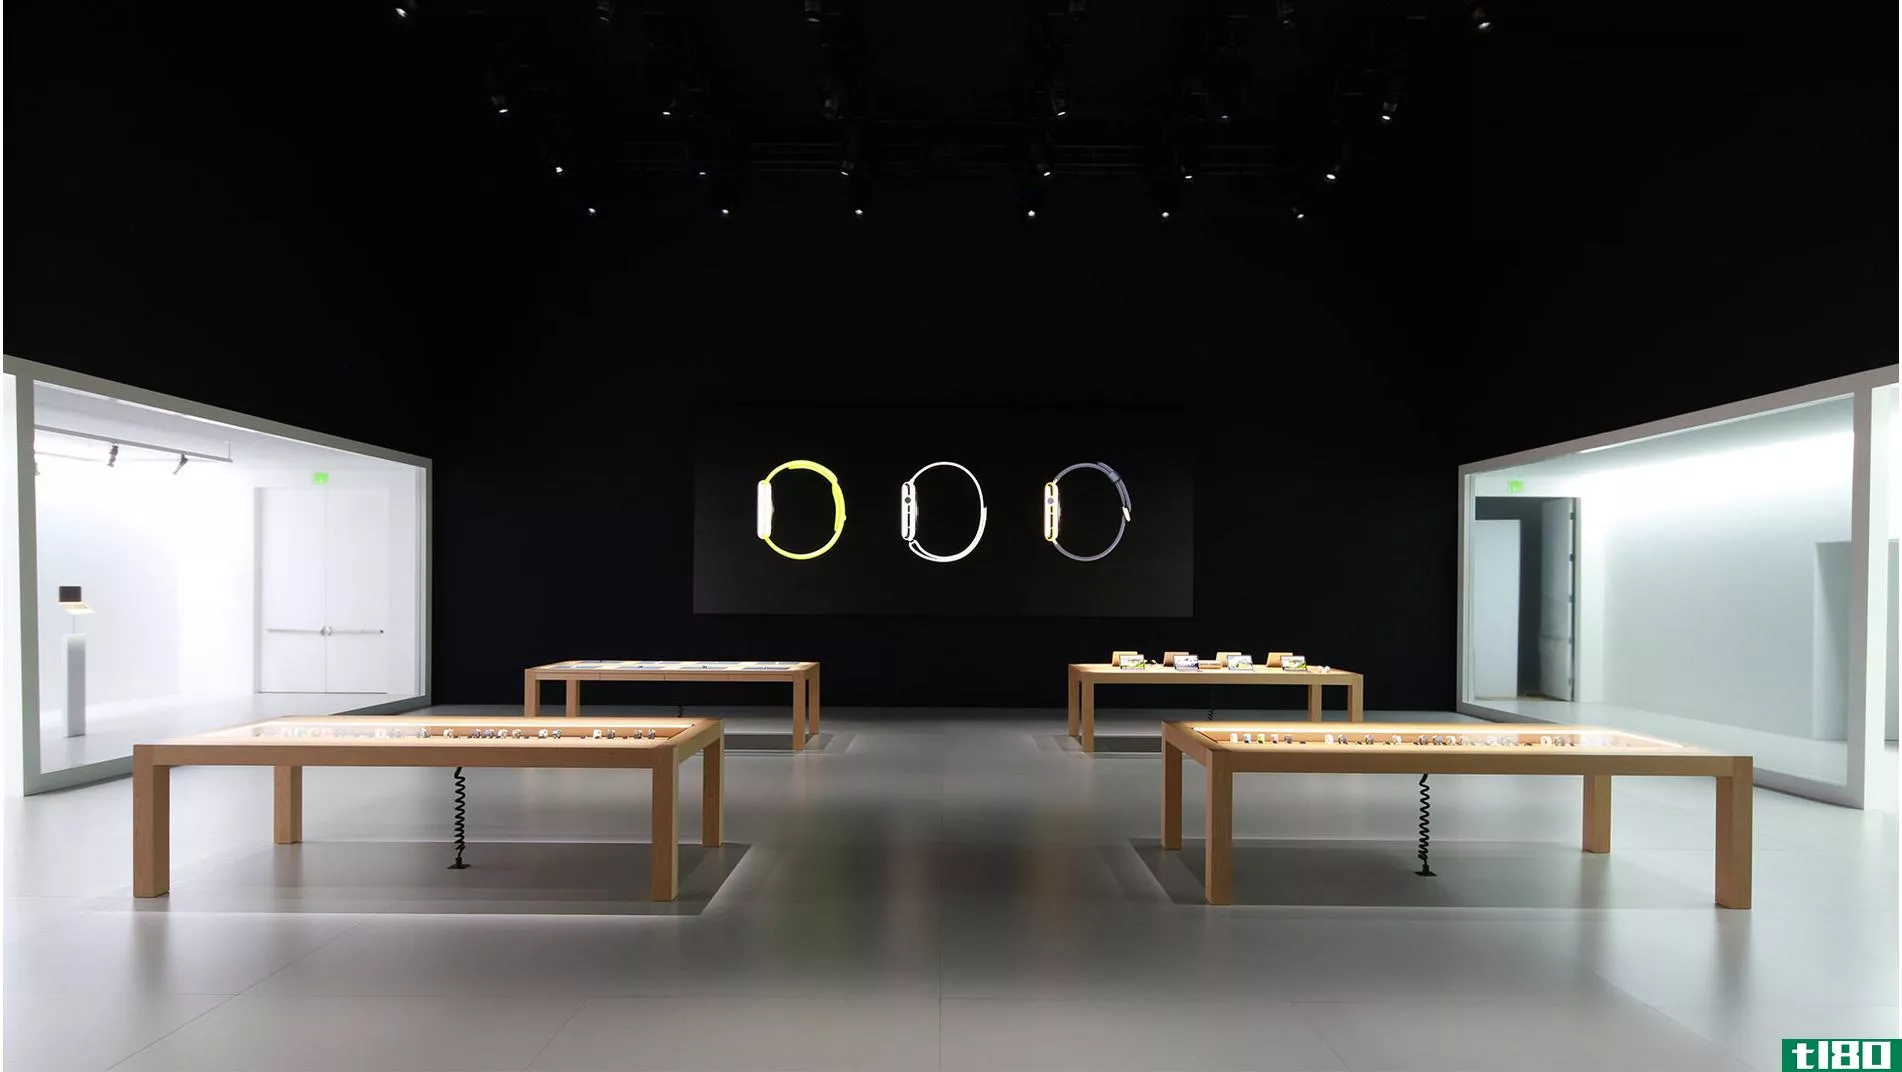 以下是苹果将如何在苹果专卖店销售一块价值1万美元的手表